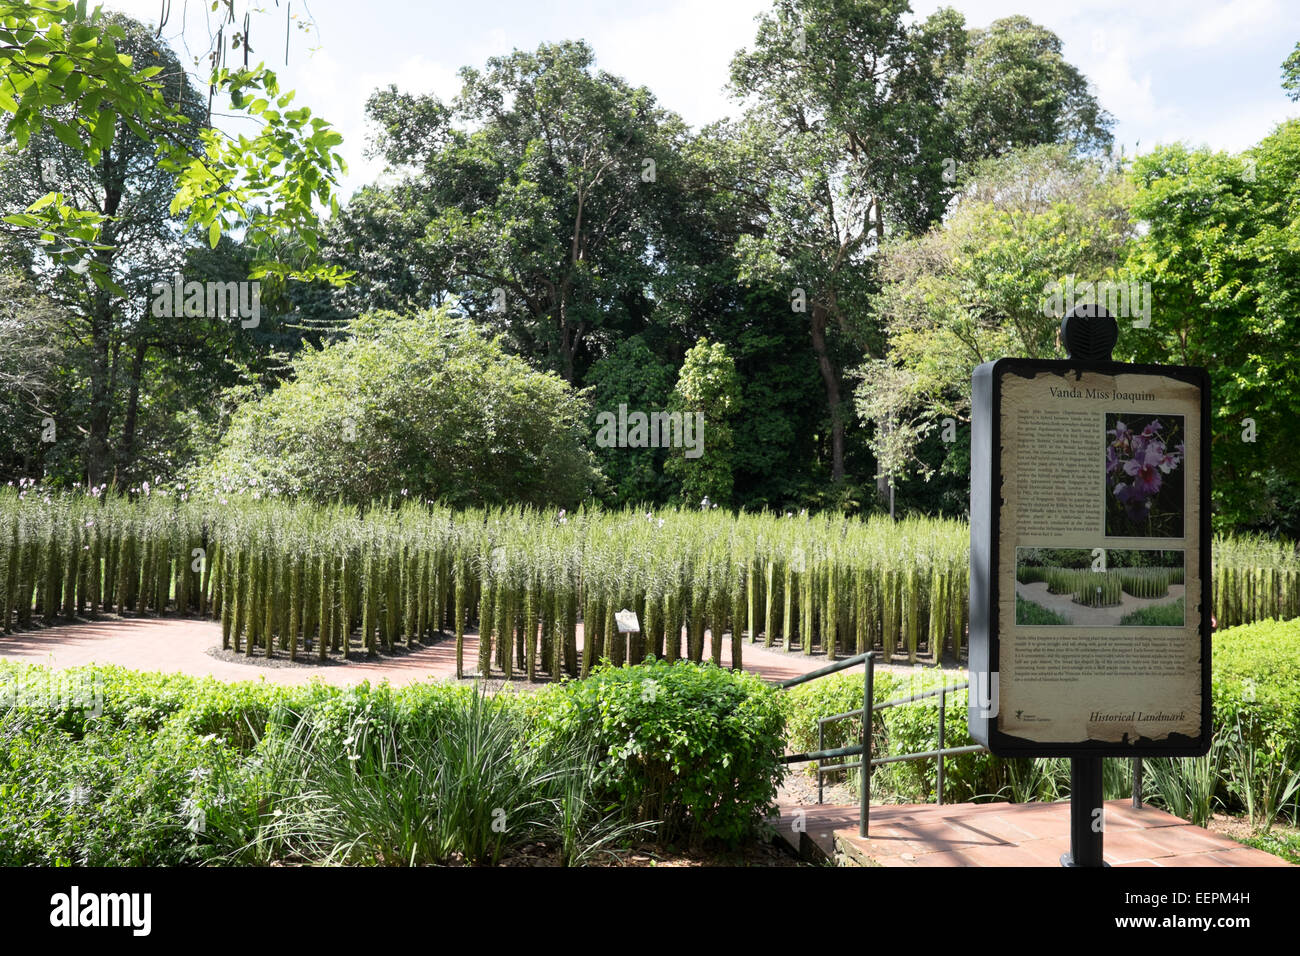 Vanda  Miss Joaquim. Singapore Botanic Gardens. Stock Photo